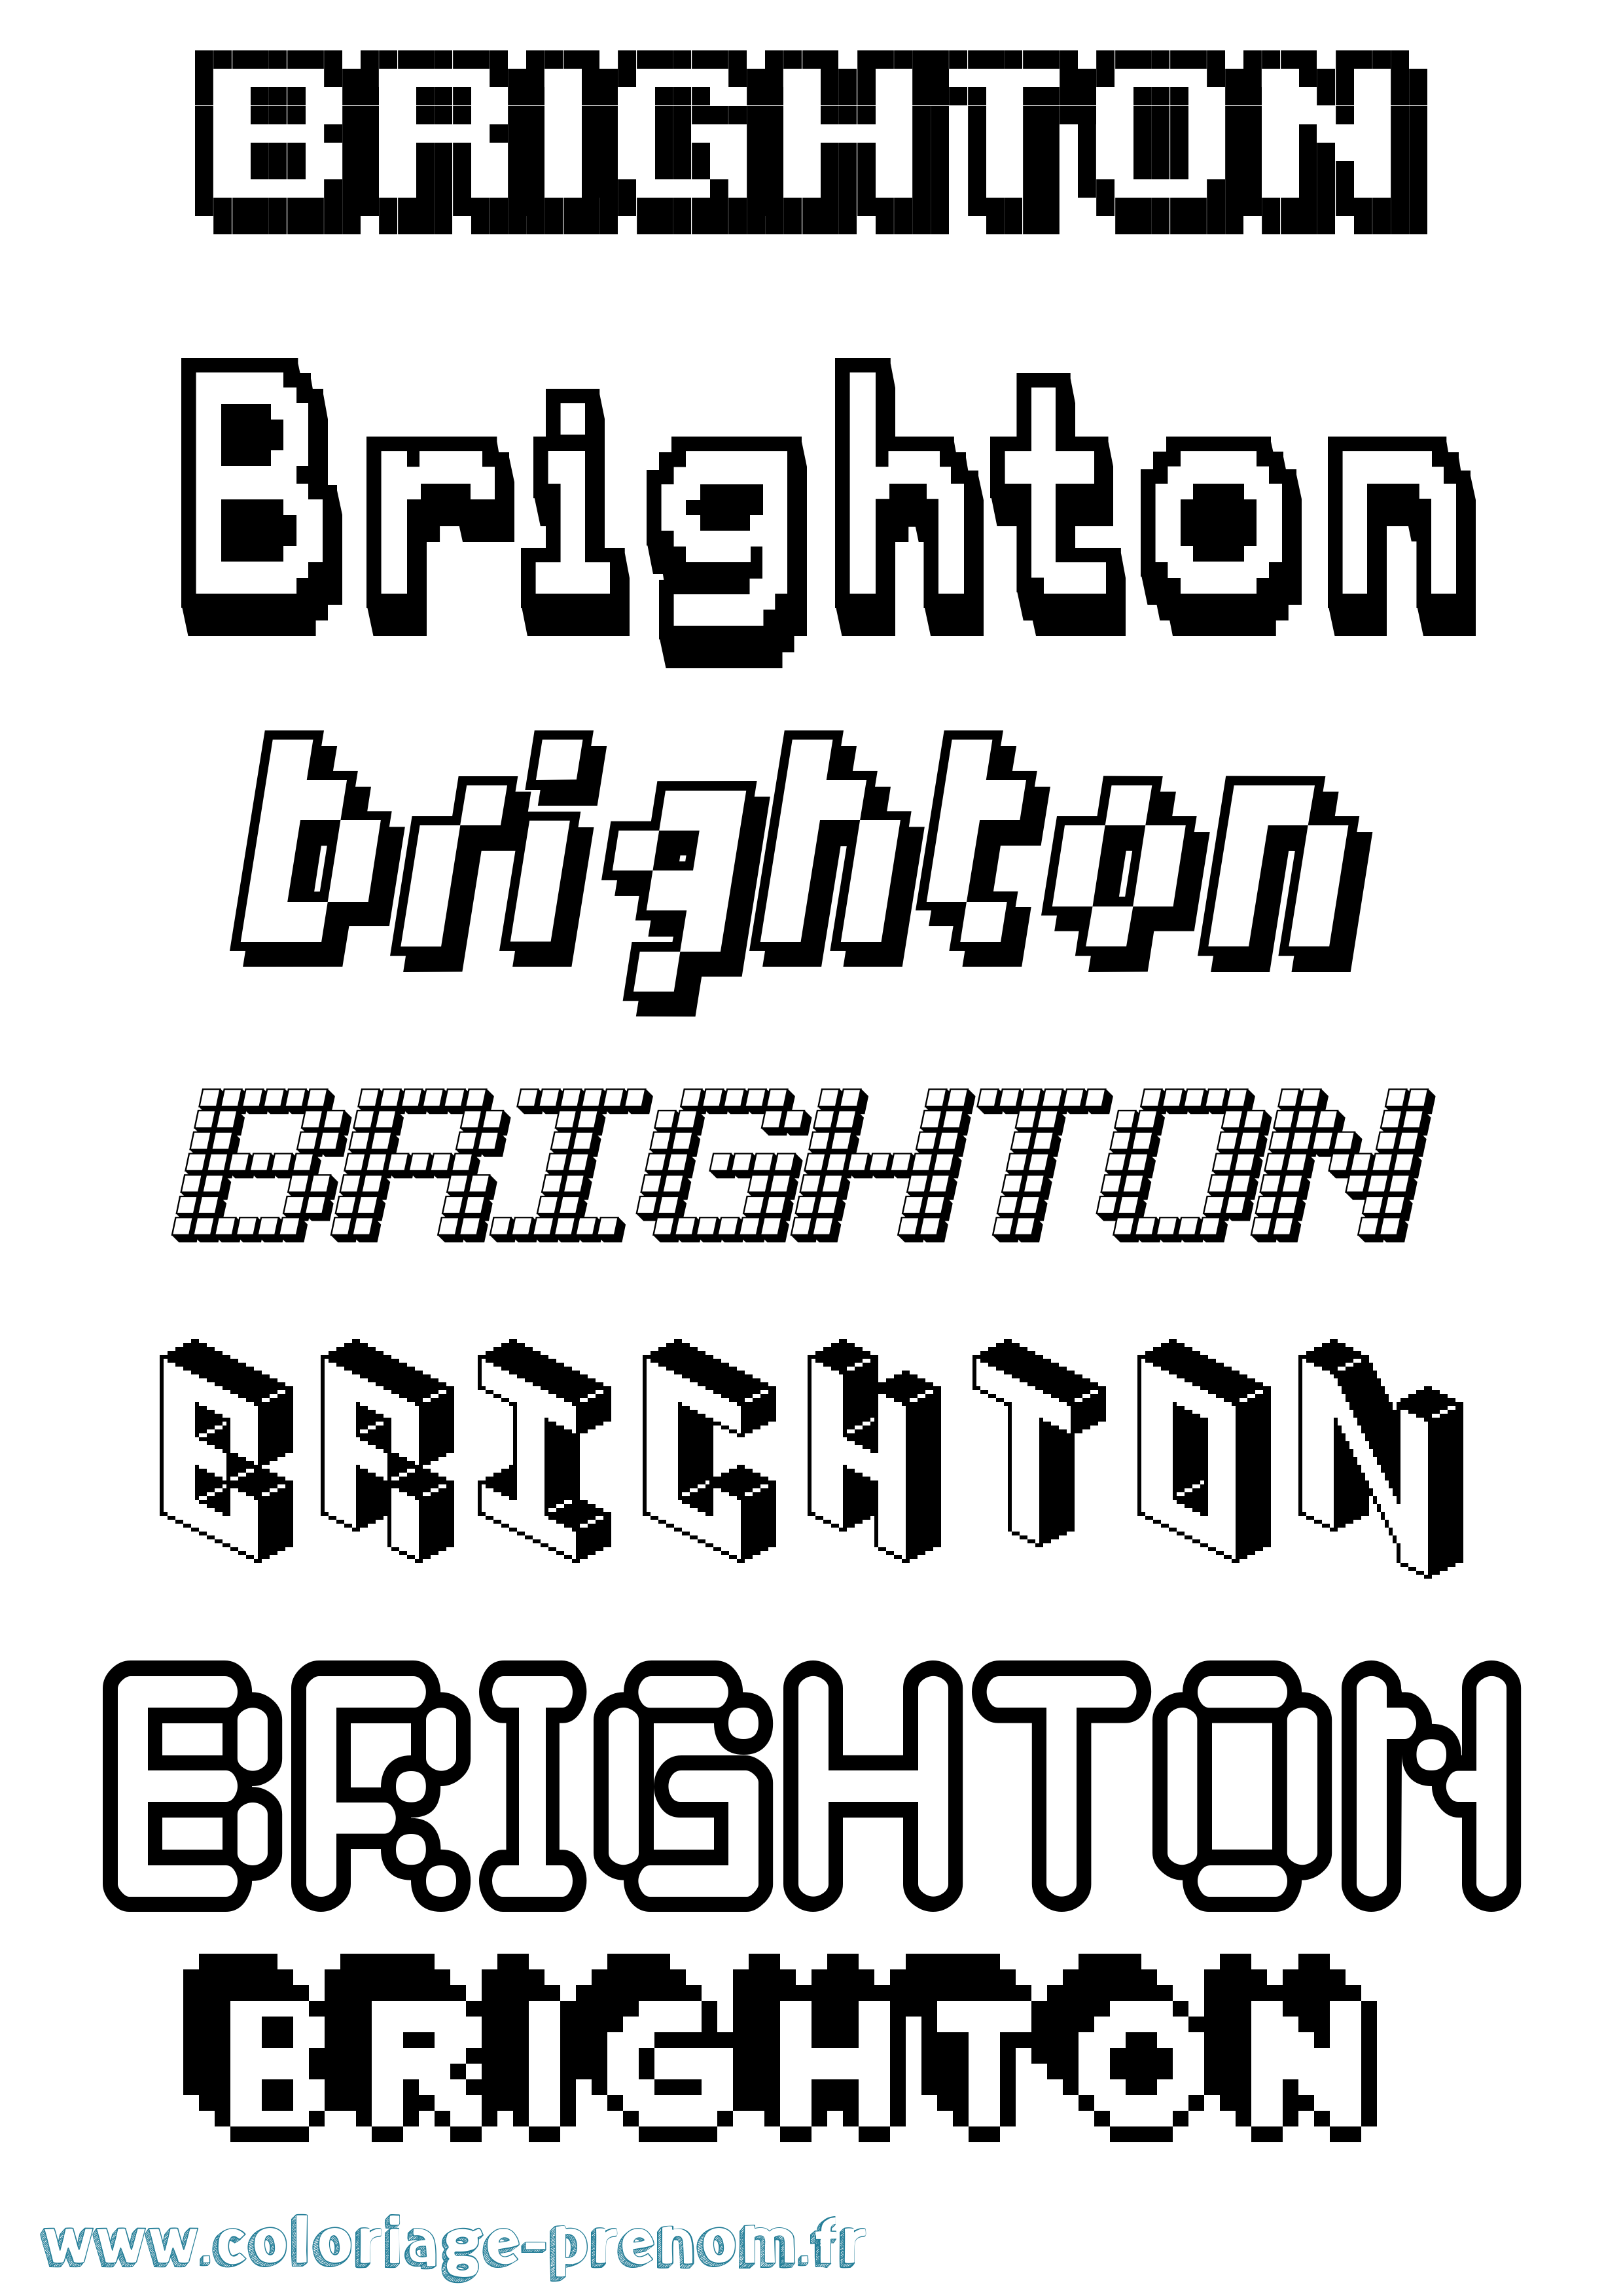 Coloriage prénom Brighton Pixel